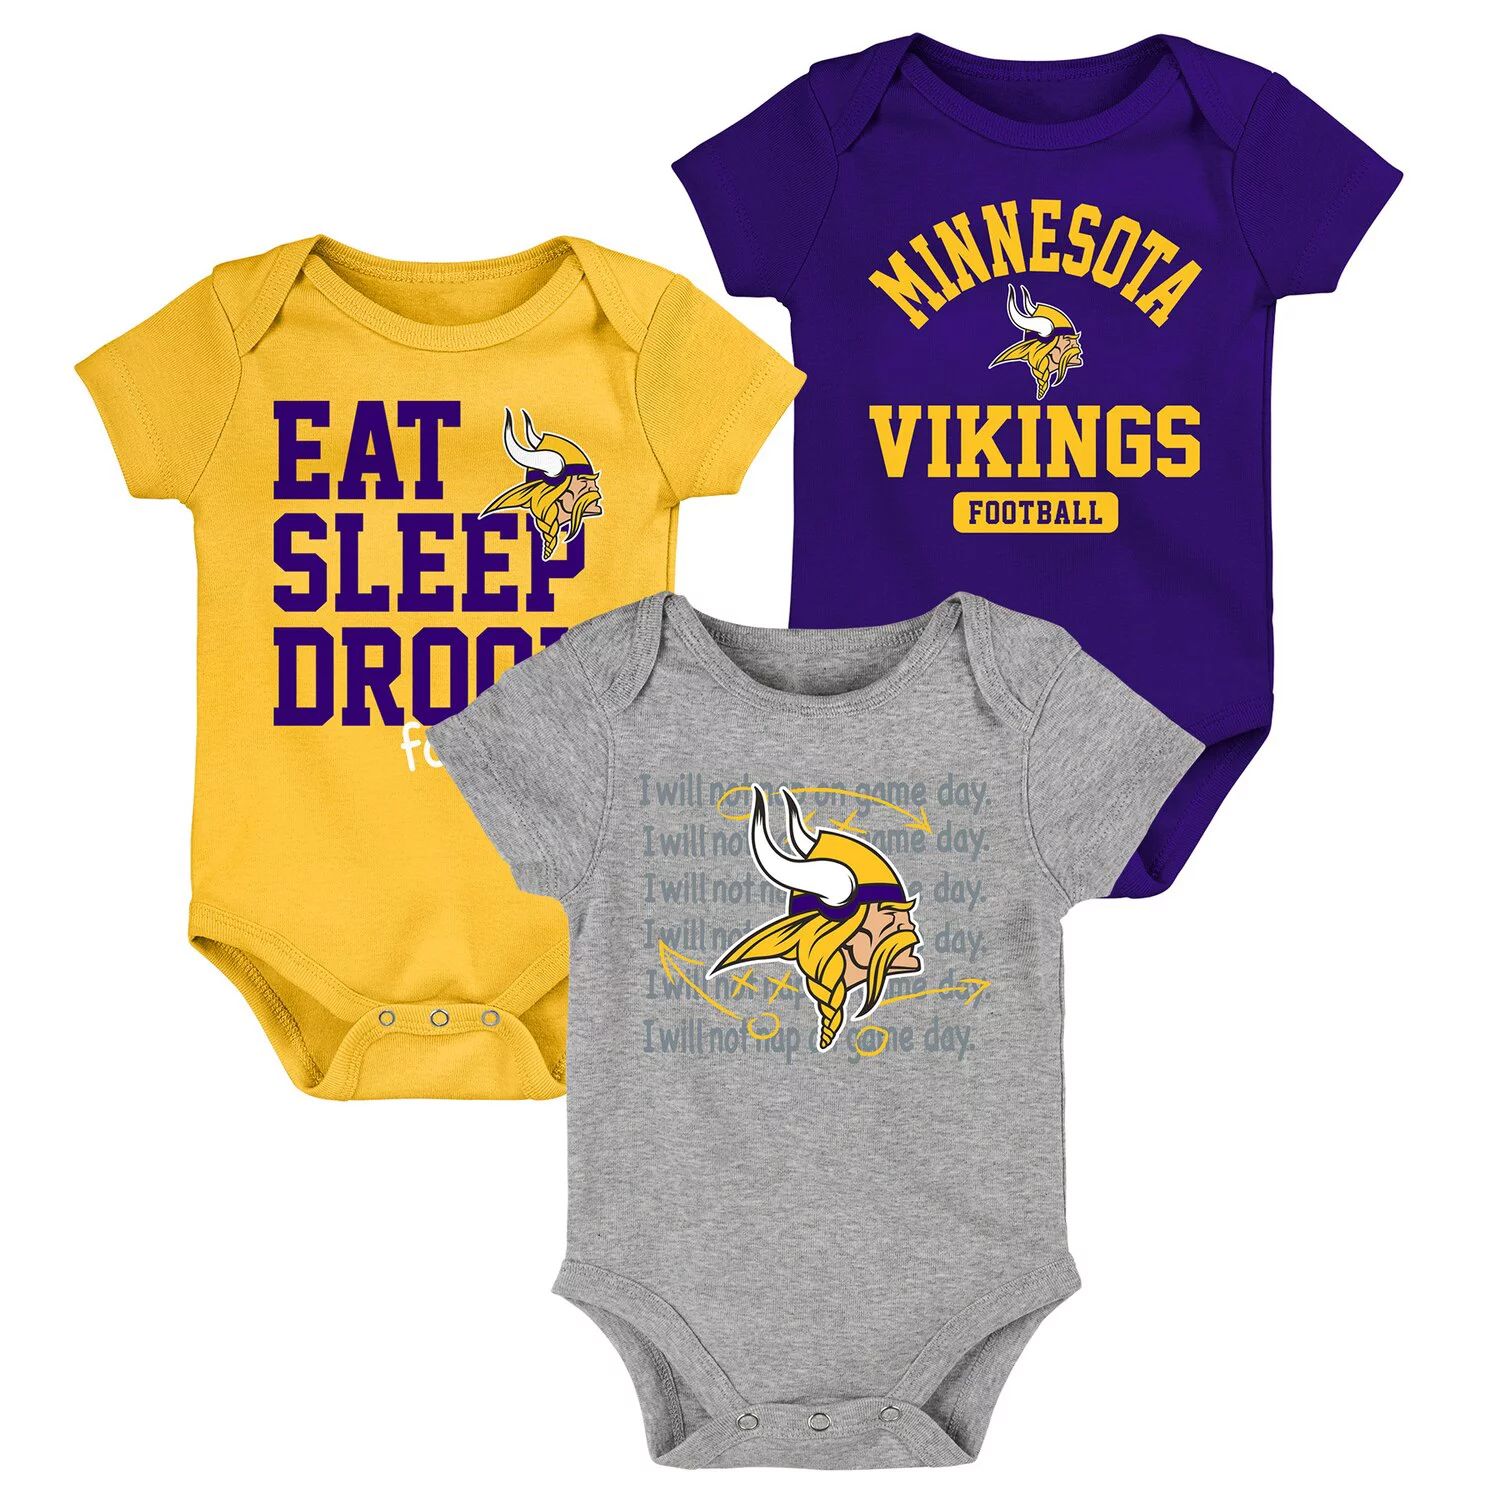 Комплект боди для новорожденных и младенцев фиолетового/желтого цвета Minnesota Vikings Eat, Sleep, Drool Football, состоящий из трех частей Outerstuff